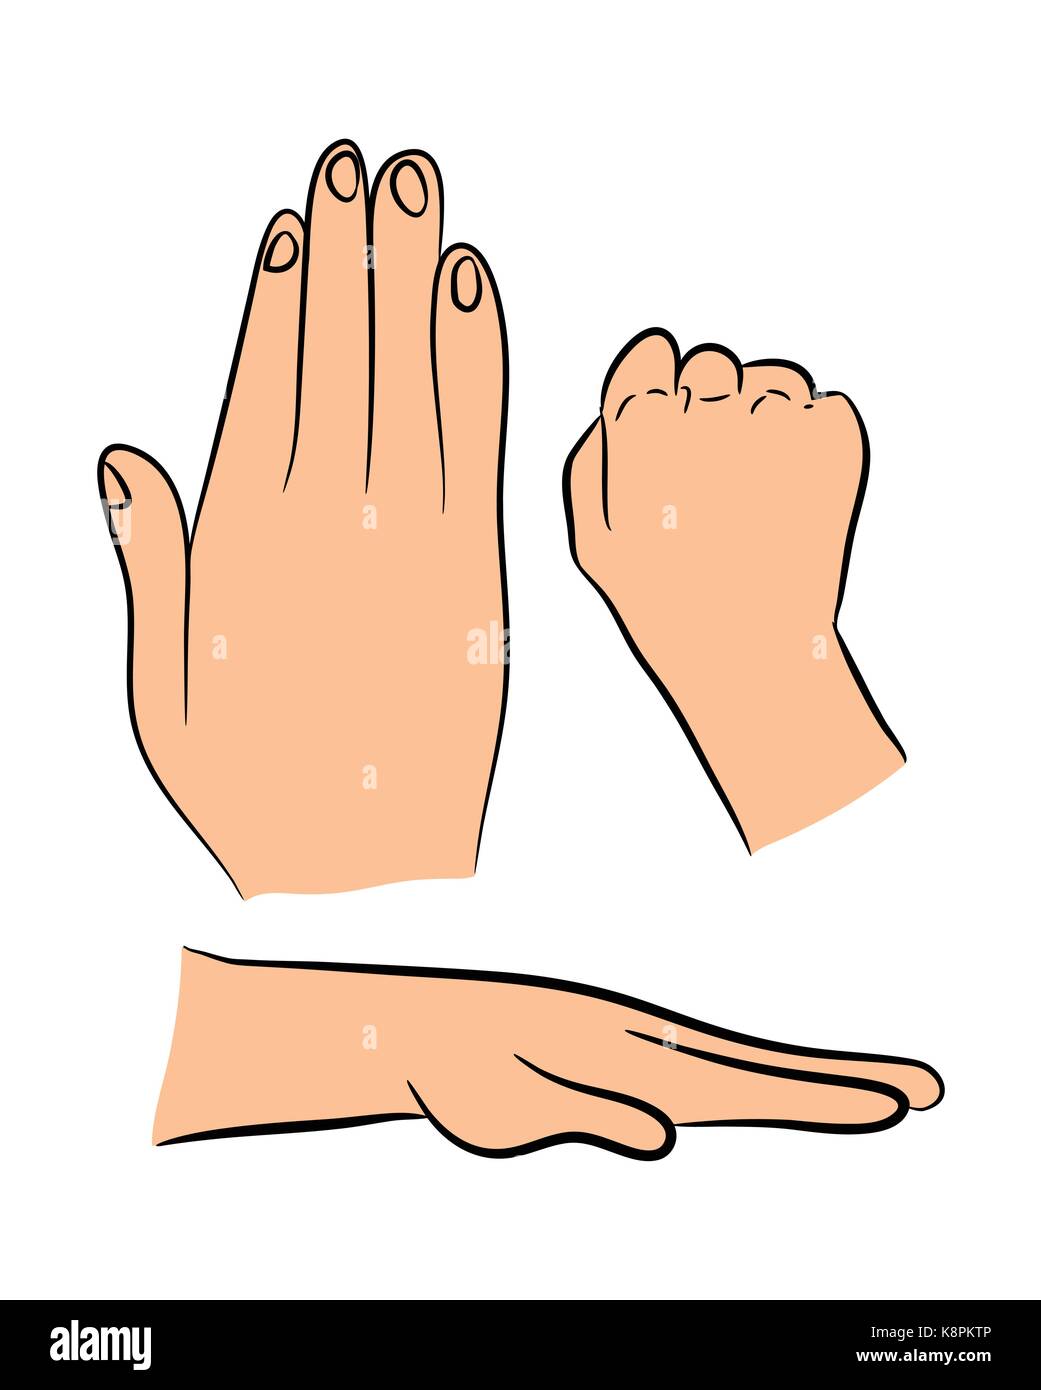 Image de caricature la main de l'ensemble de gestes. Vector illustration isolé sur fond blanc. Illustration de Vecteur